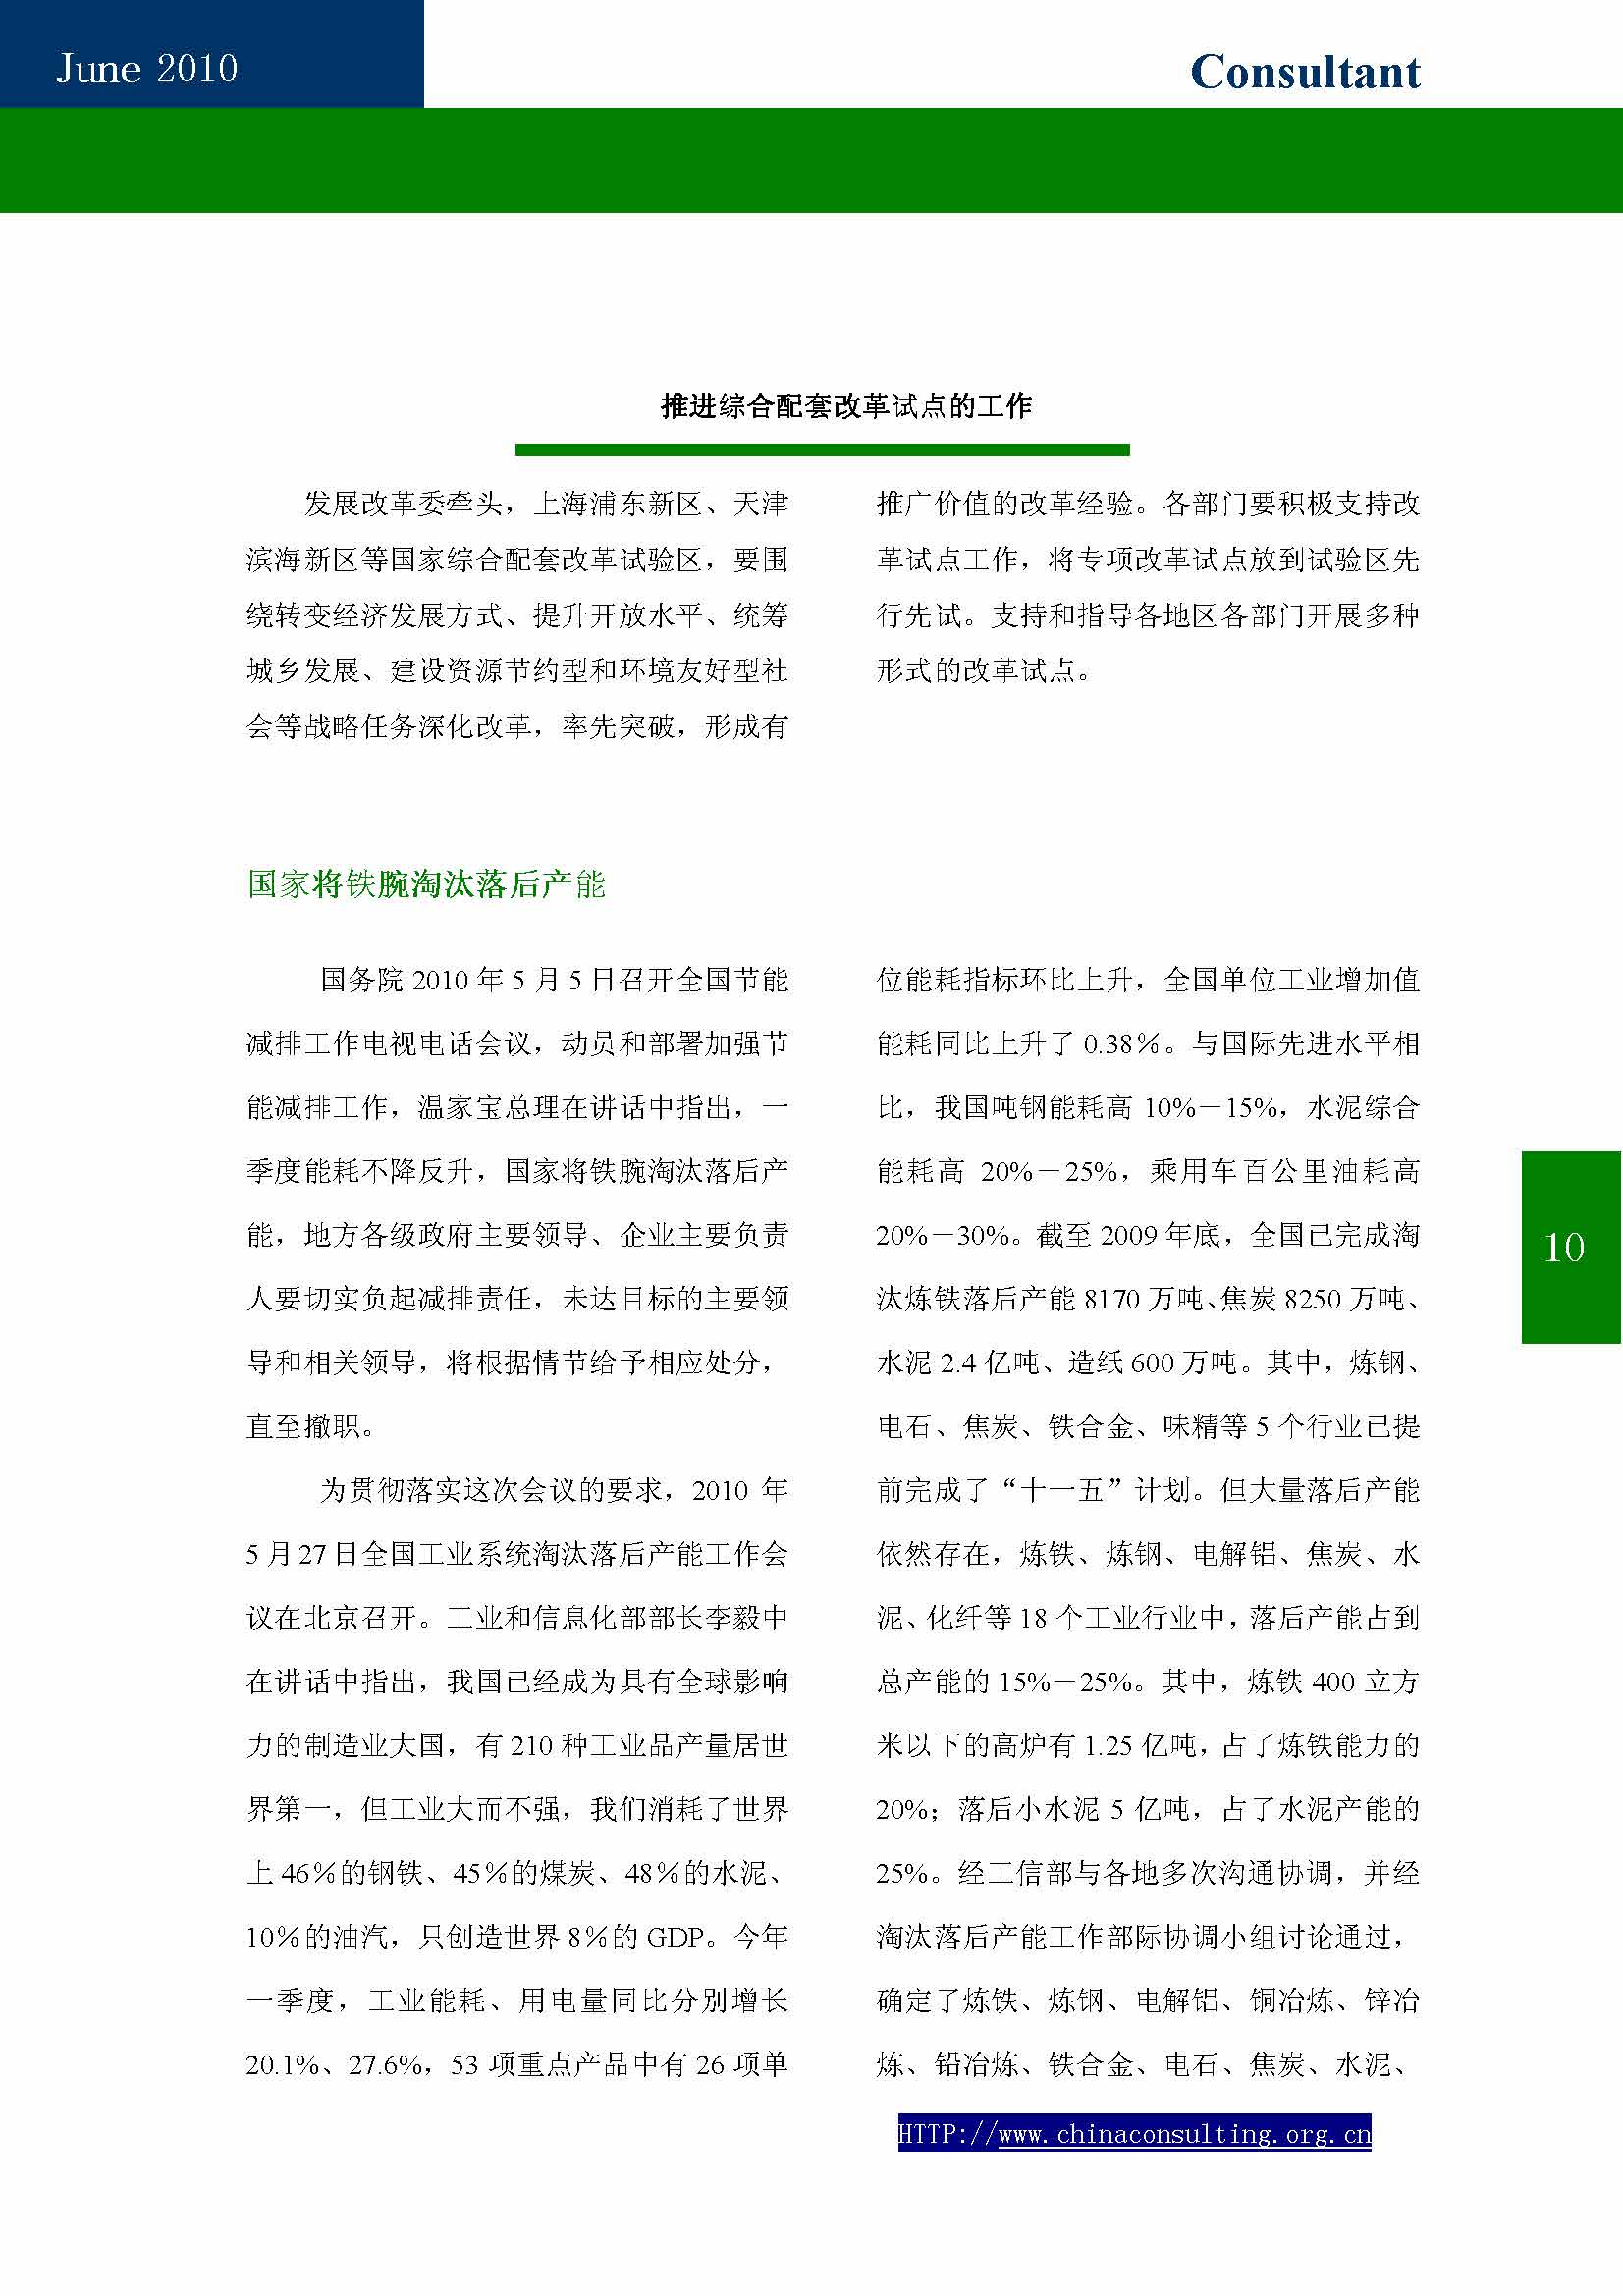 10中国科技咨询协会第十期会刊_页面_12.jpg